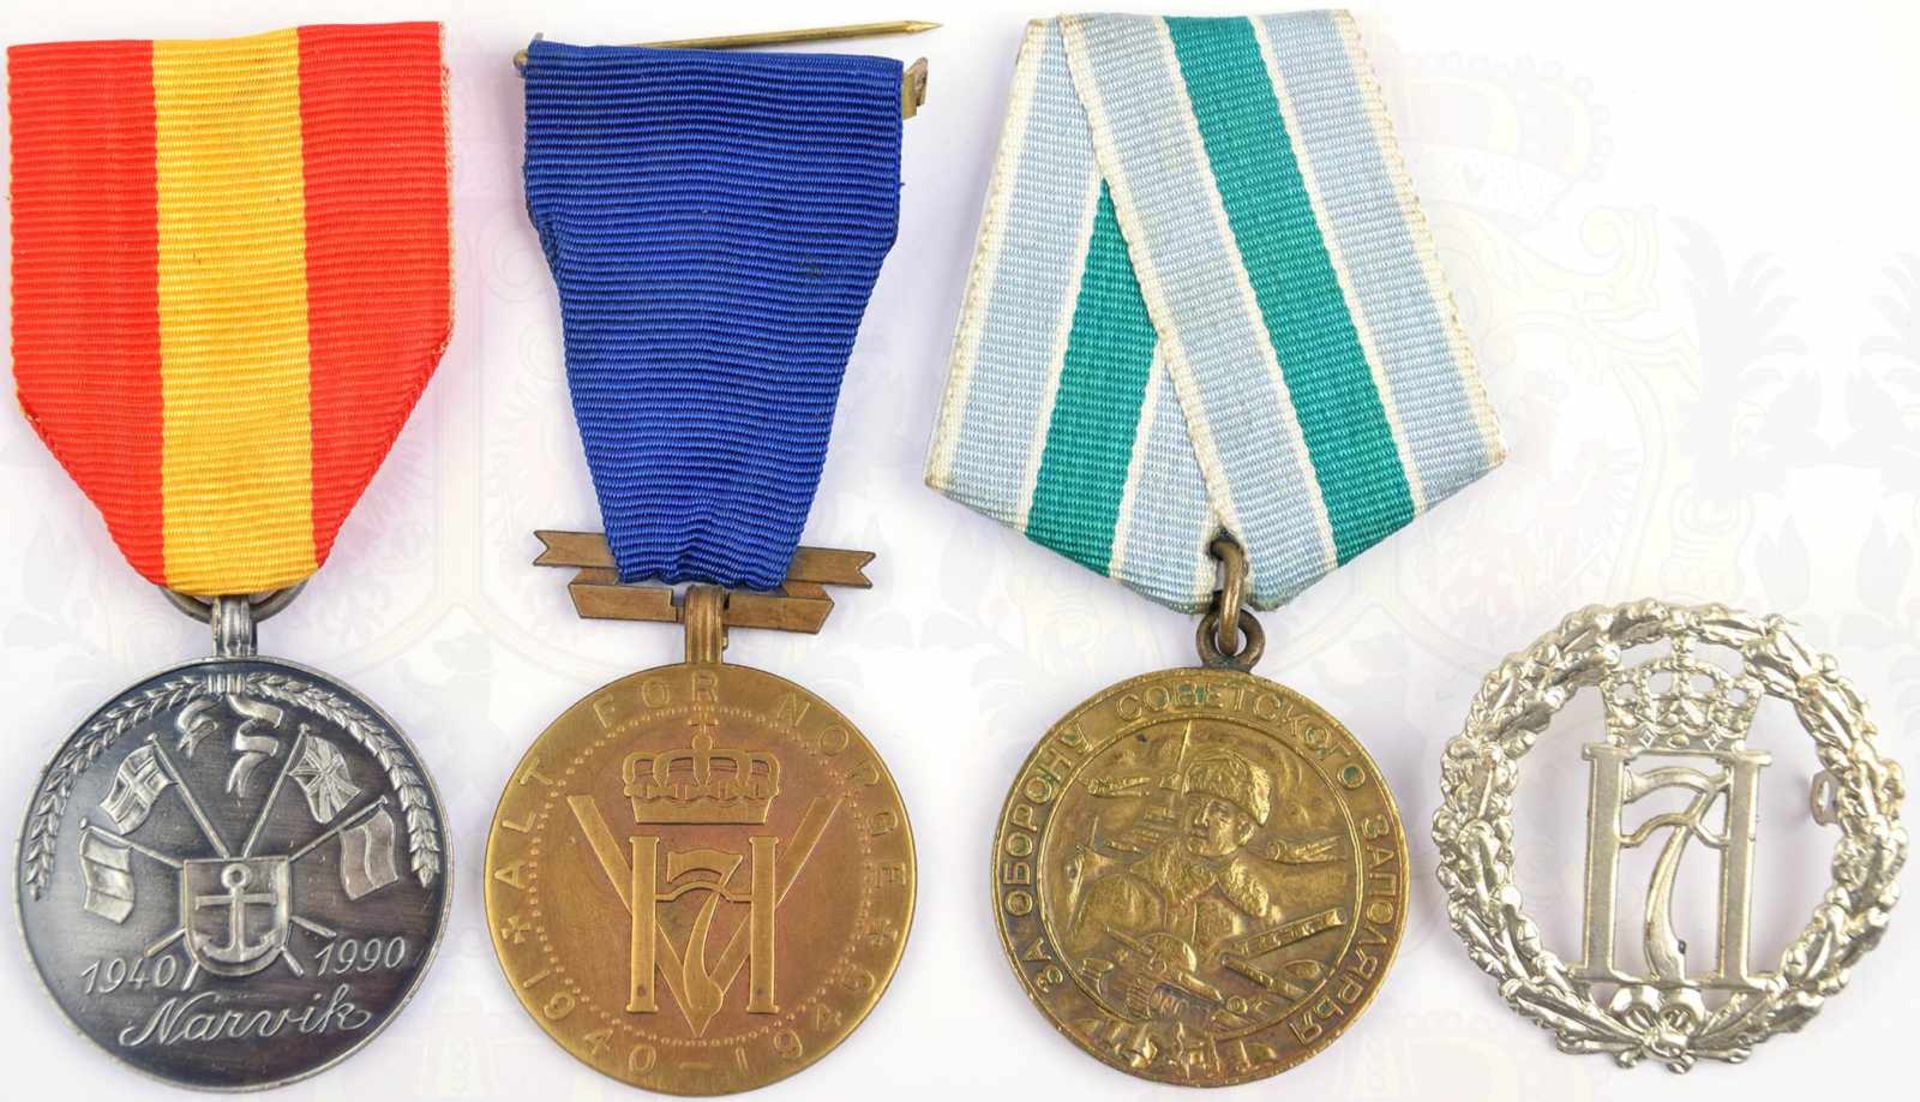 2 ERINNERUNGSMEDAILLEN, Alt for Norge 1940-1915 u. Narvik 1940-1990; dazu Mützenabzeichen, sowjet. - Bild 2 aus 3